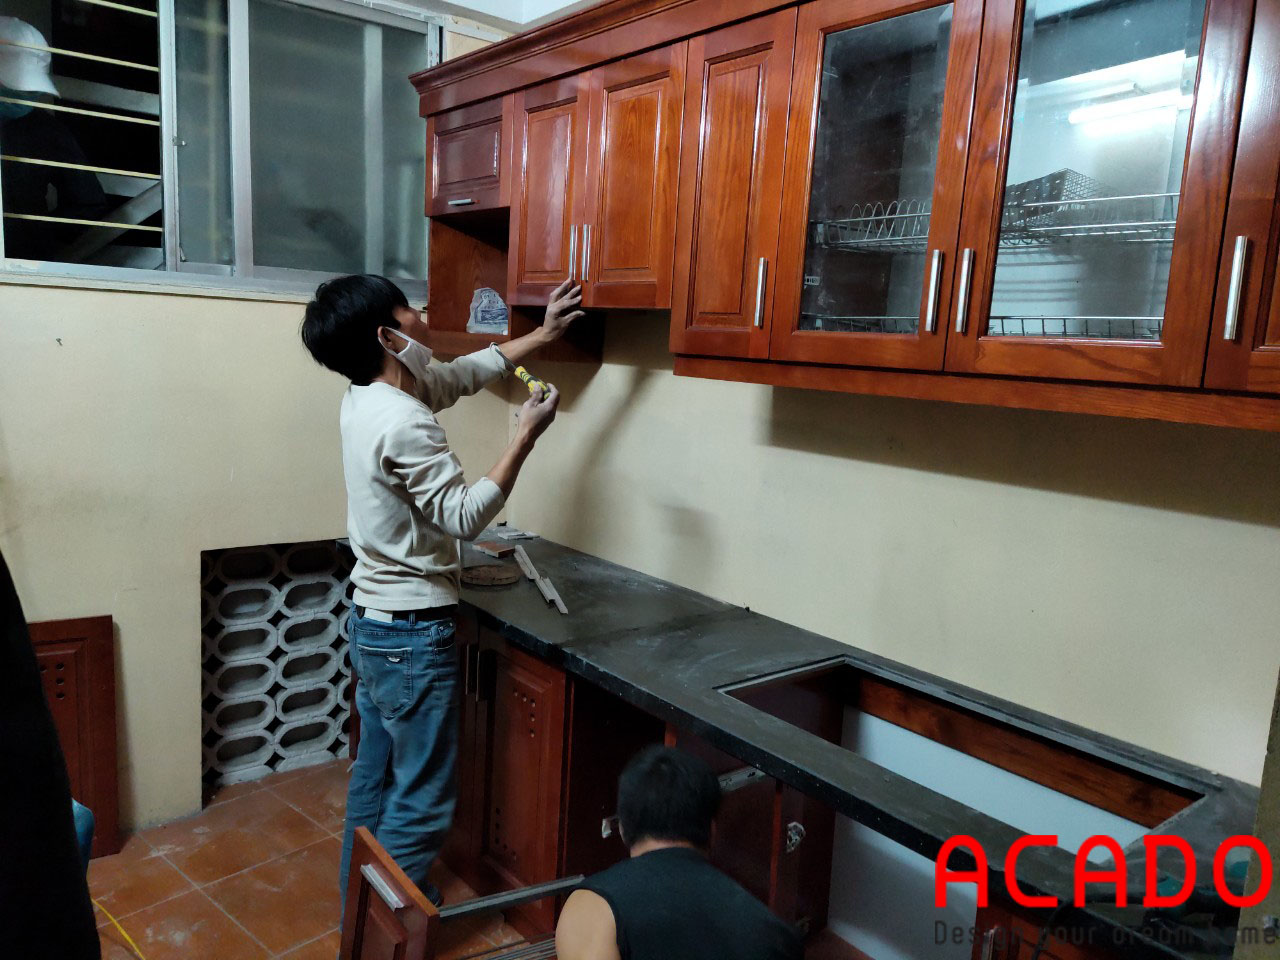 ACADO thợ thi công Lắp đặt tủ bếp - Thi công tủ bếp tại Hoàng Mai - Hà Nội Hà